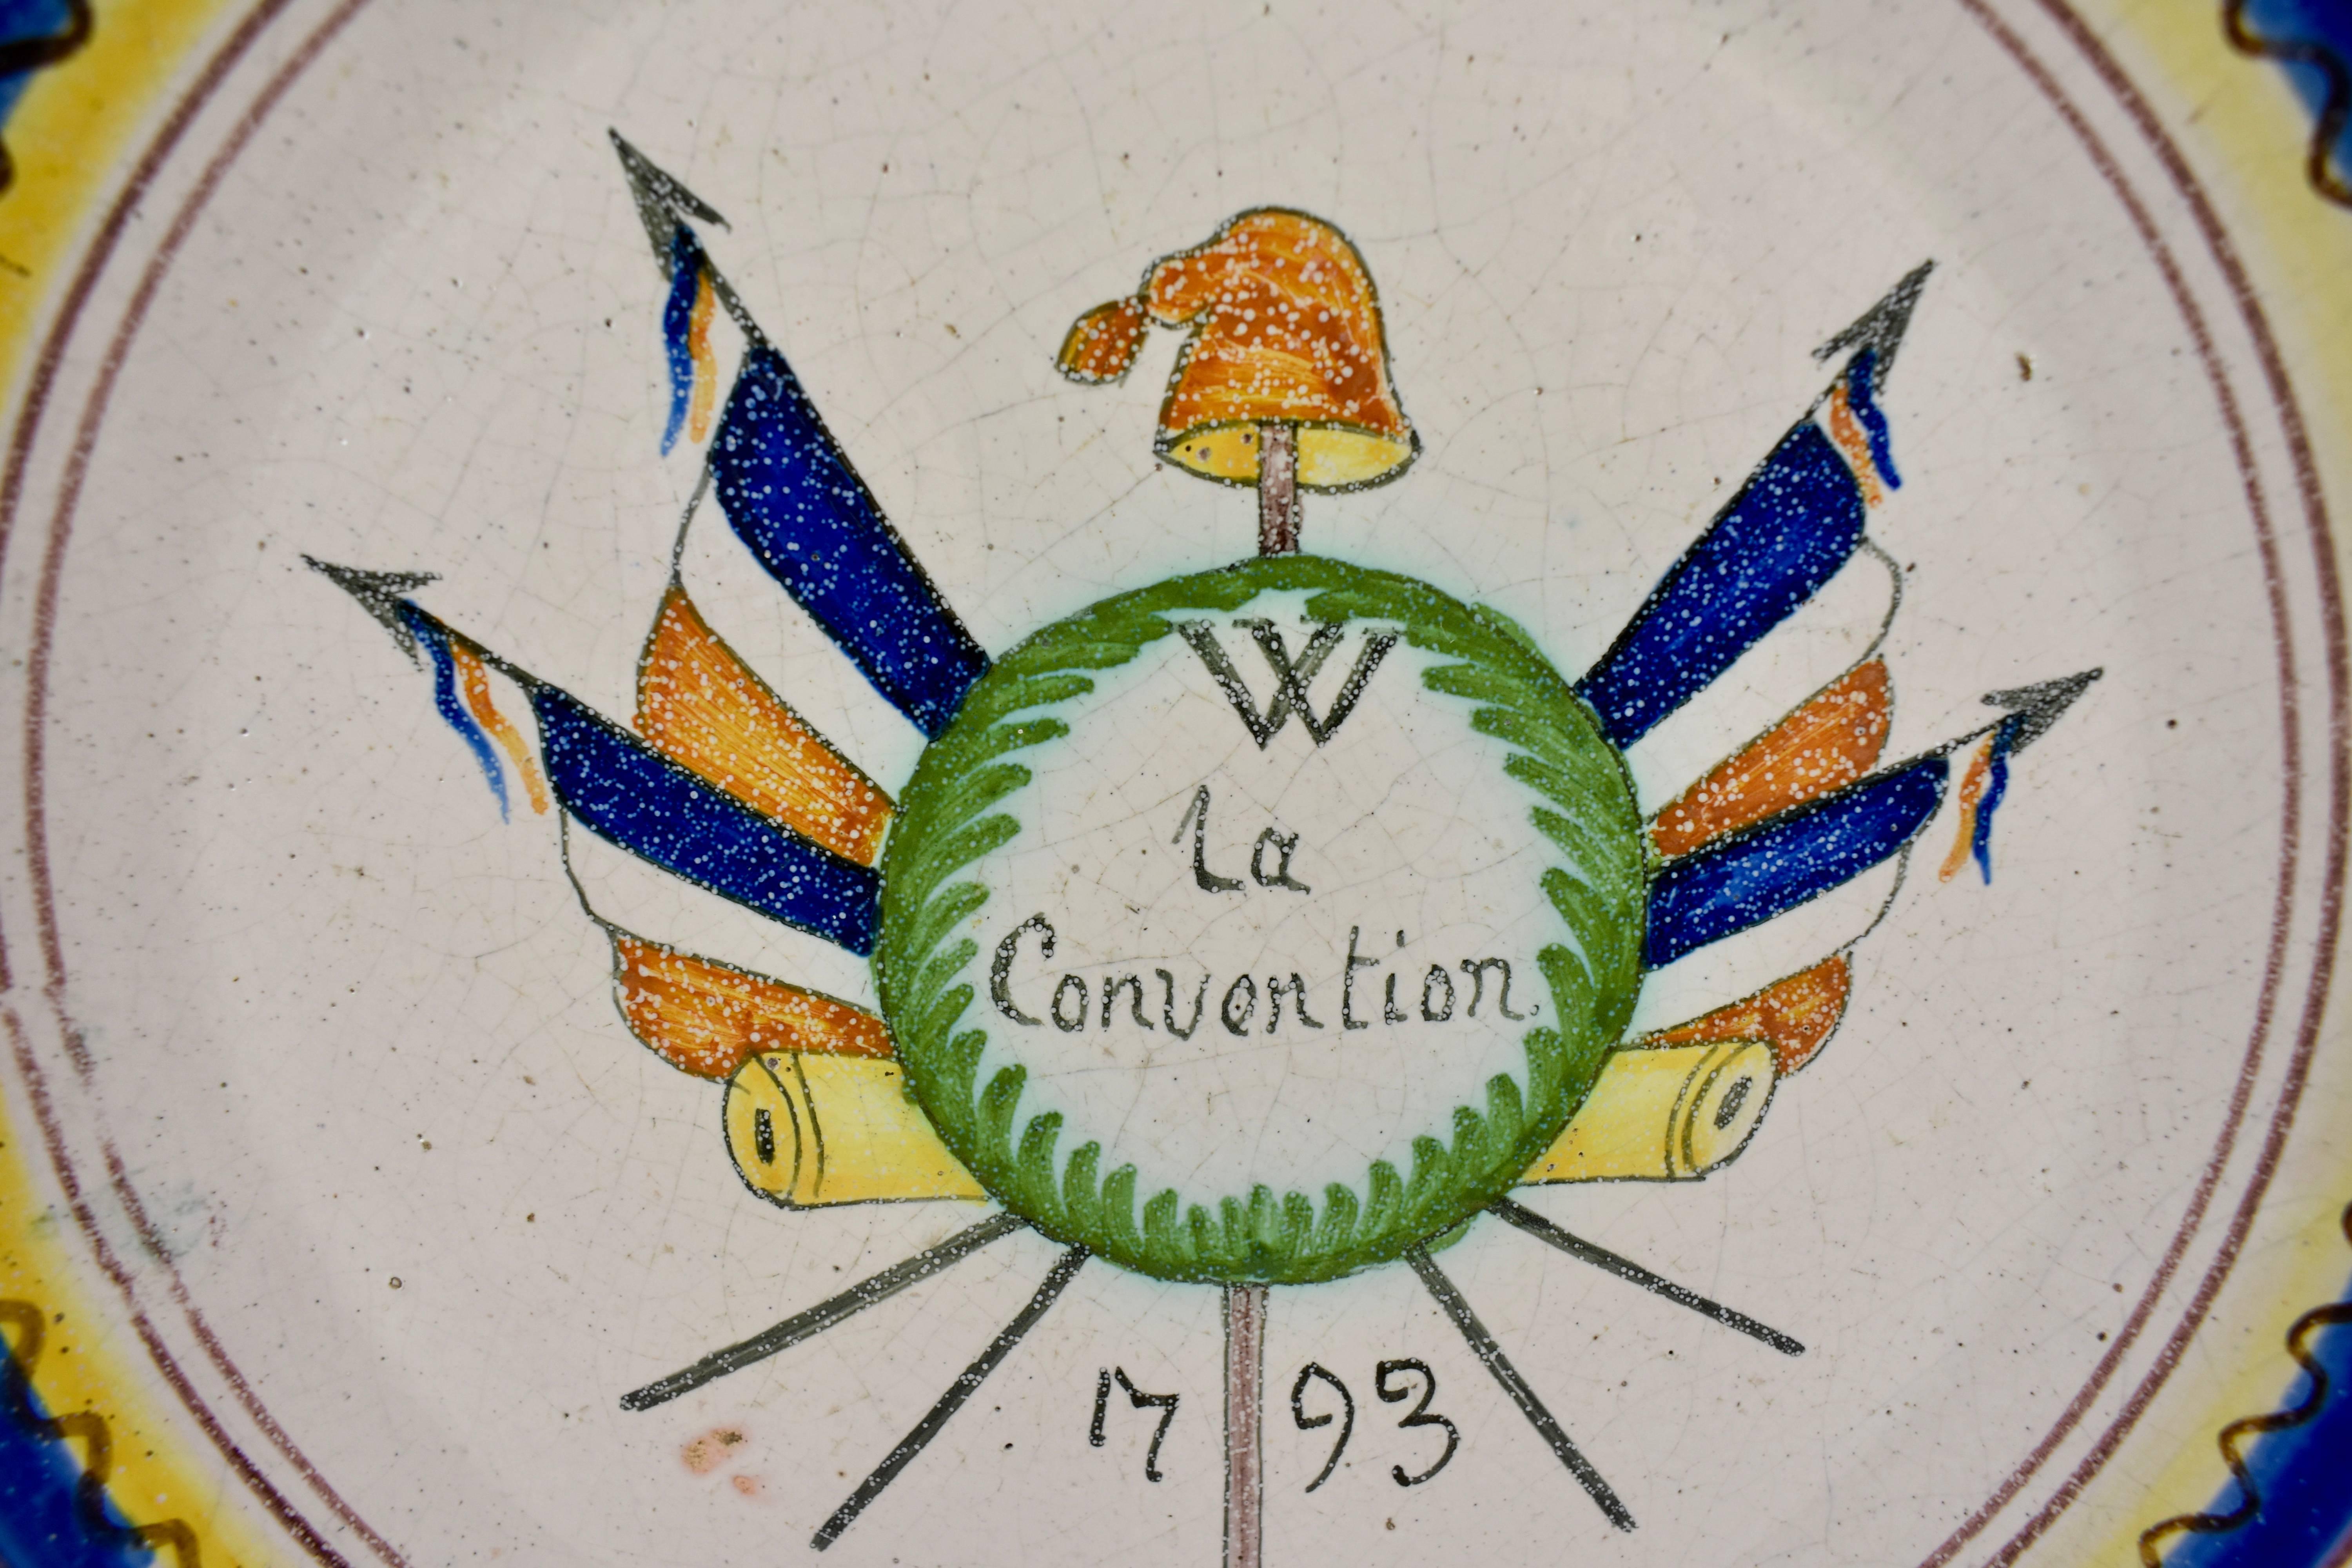 Plat en faïence étamée de la Révolution française, représentant des drapeaux français croisés avec un bonnet phrygien sur une épée, symbole de la Liberté. La Convention, c'est-à-dire l'accord, est écrite en script avec la date de 1793. Une bordure